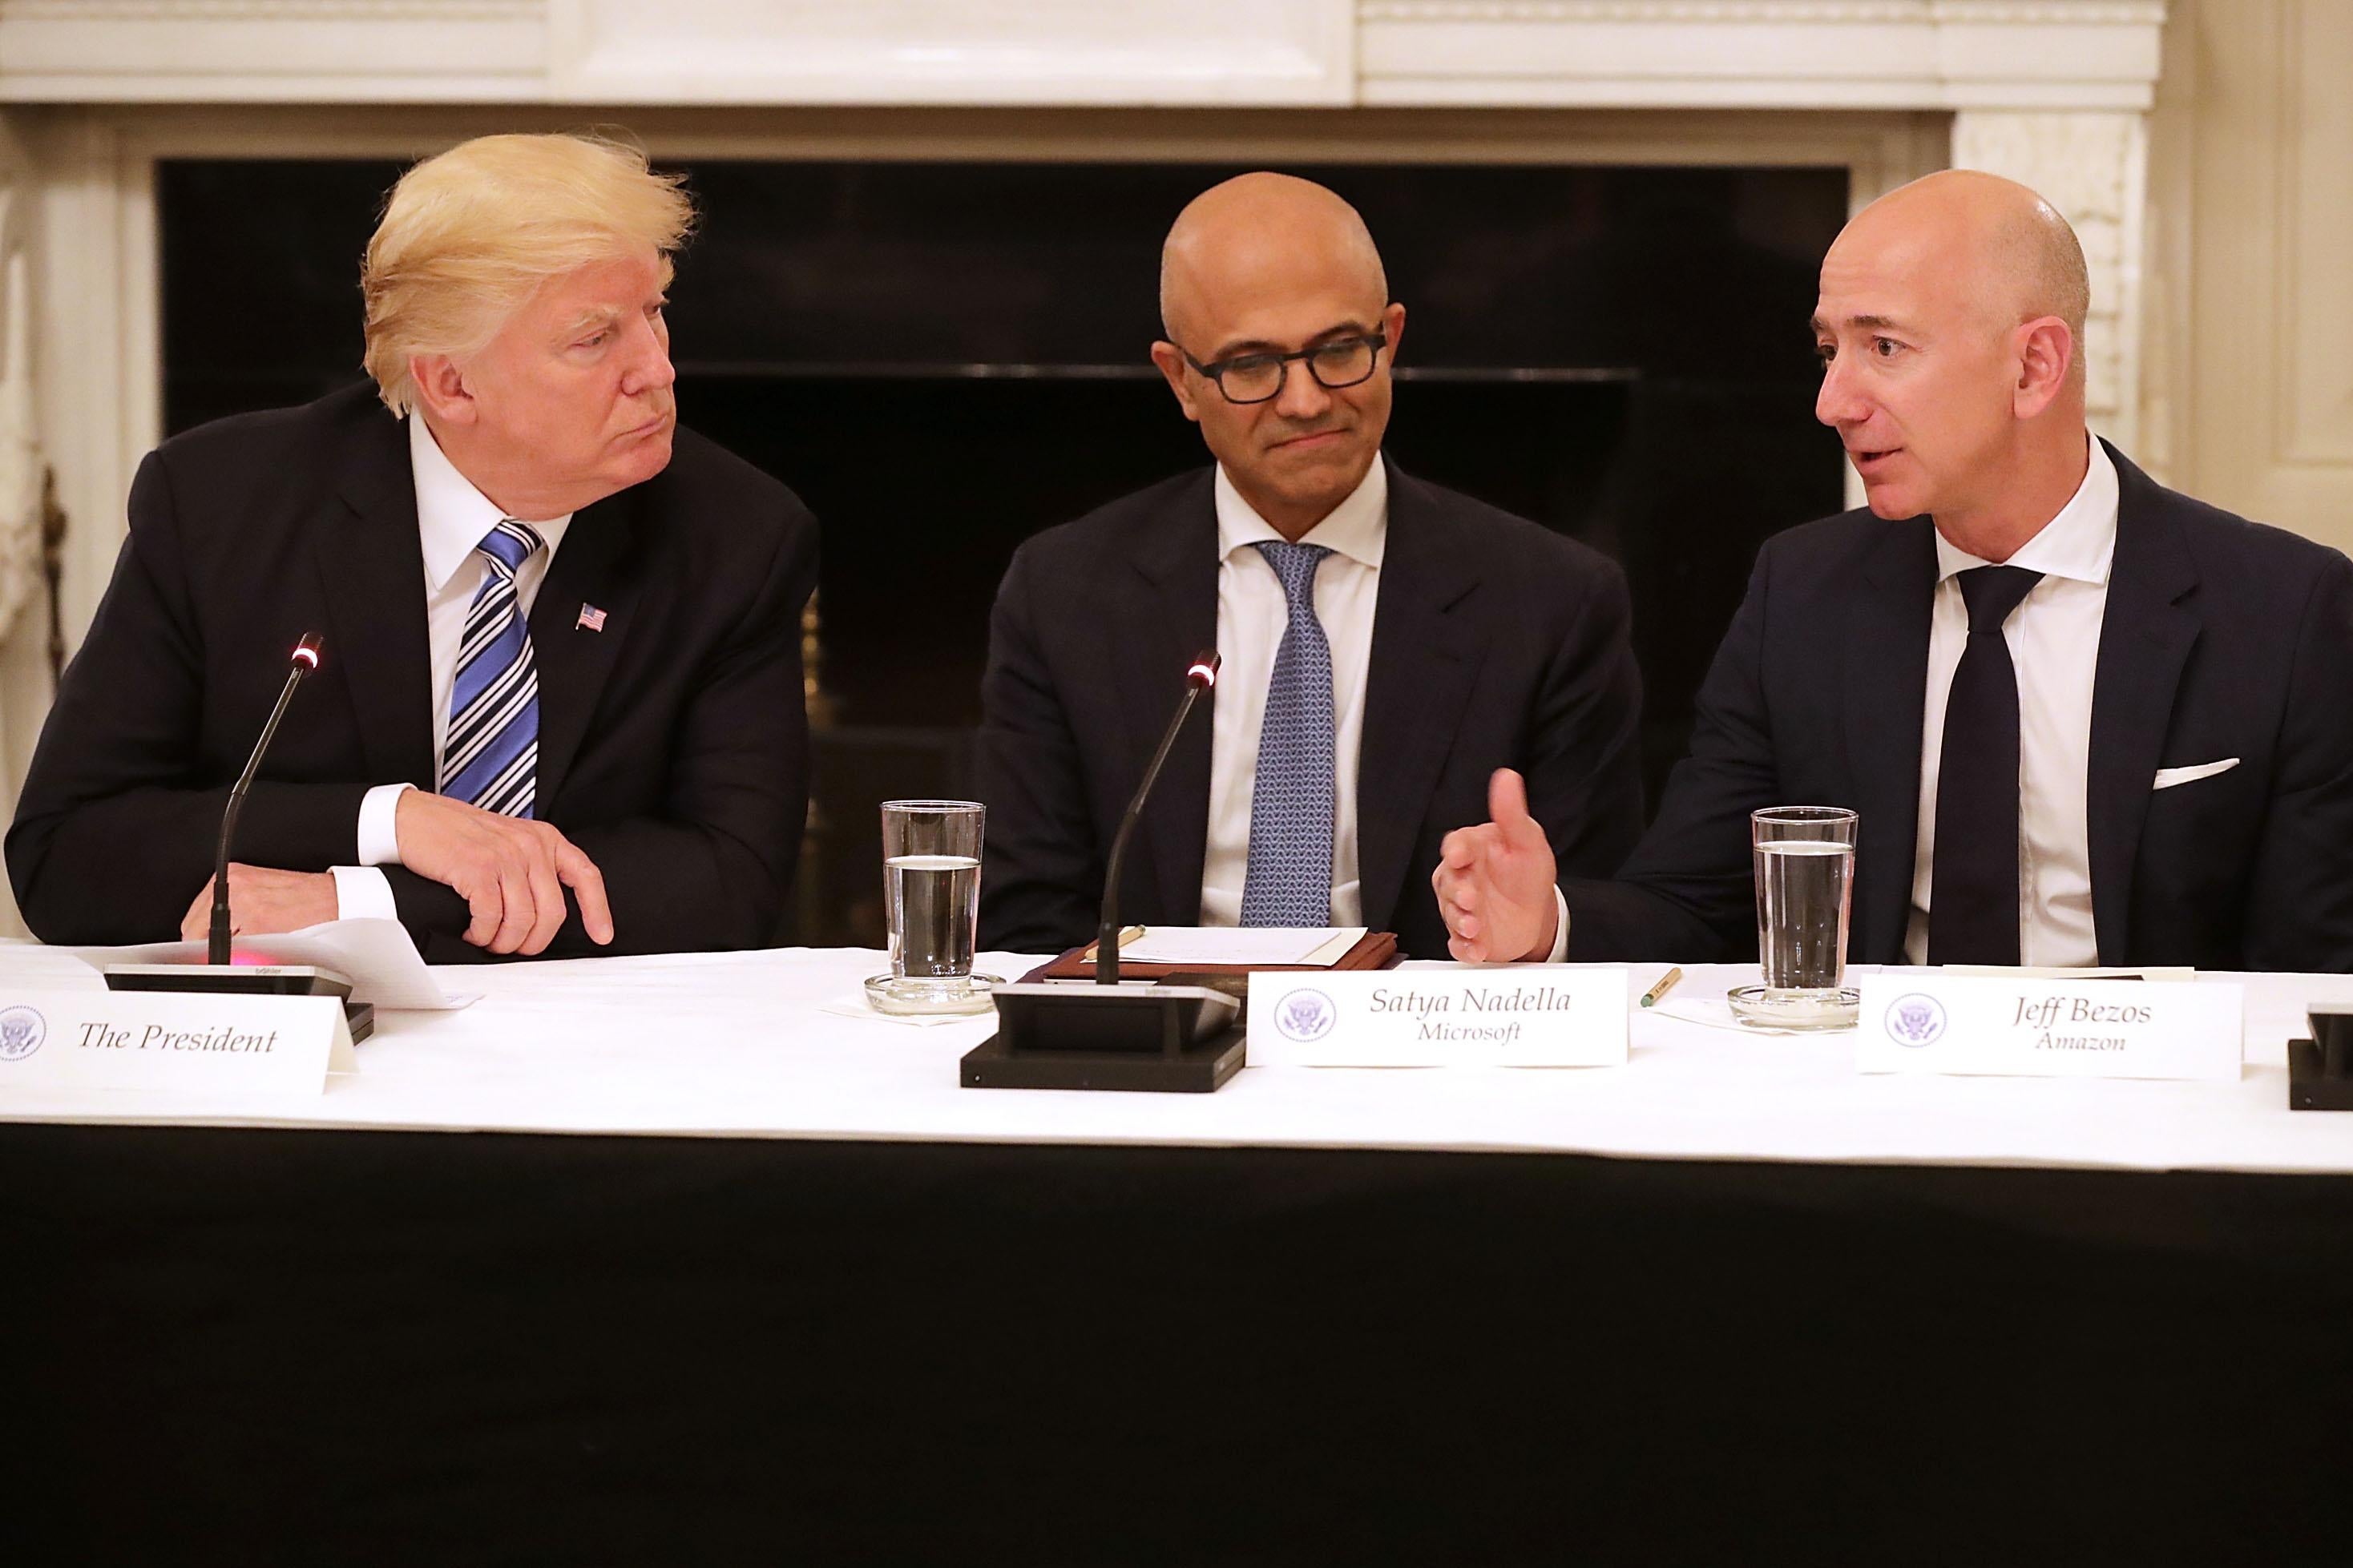 U.S. President Donald Trump, Microsoft CEO Satya Nadella, and Amazon CEO Jeff Bezos sit at a table.